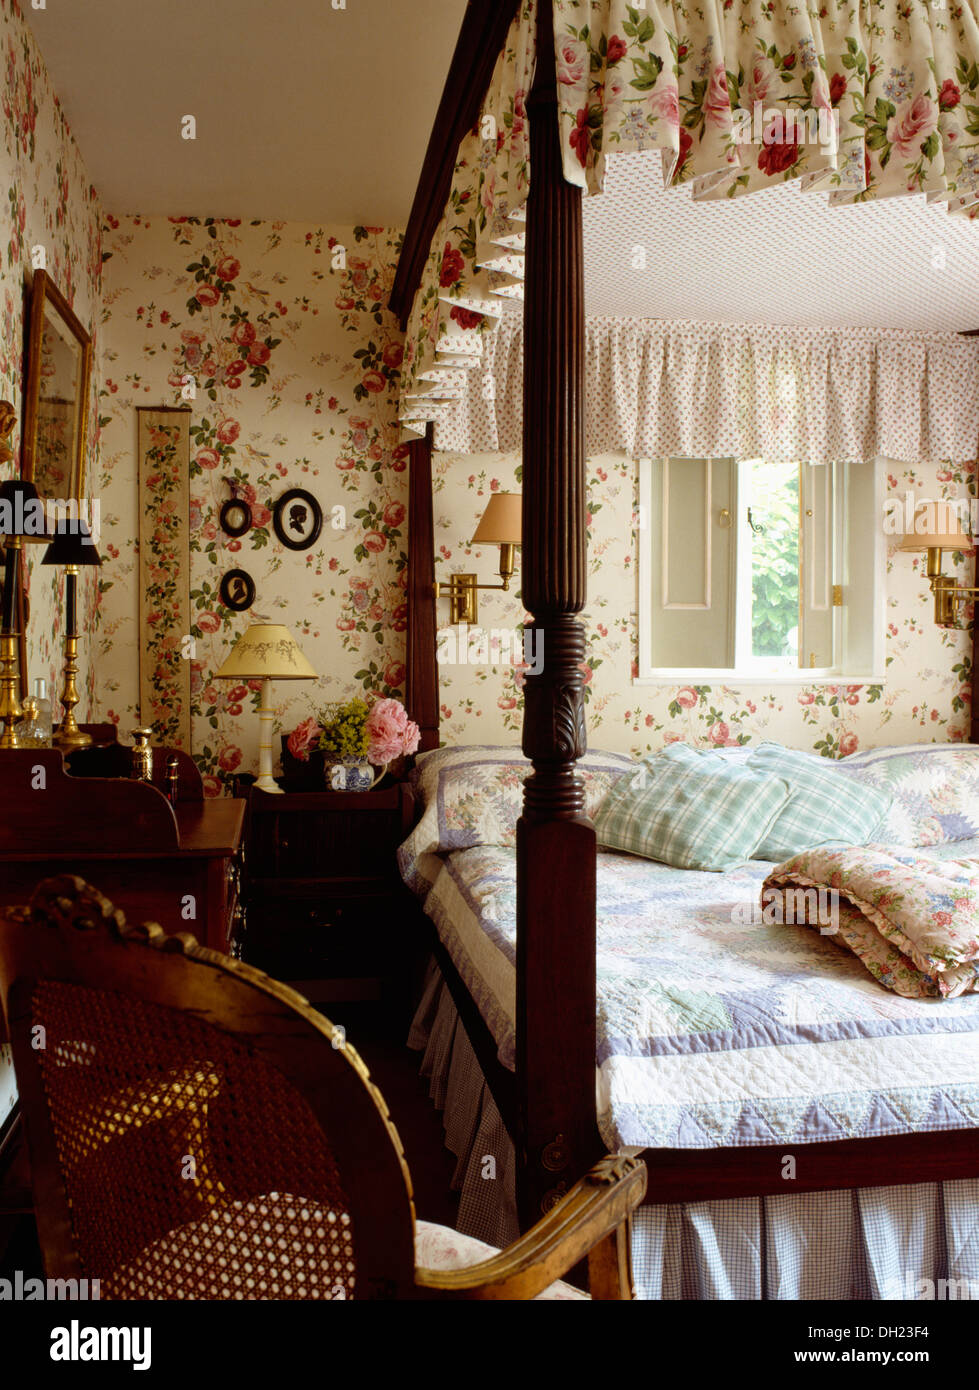 Floral Gardinen und blauen Patchwork quilt auf Himmelbett im Ferienhaus  Schlafzimmer mit passendem Blumentapete und Zuckerrohr Stuhl zurück  Stockfotografie - Alamy